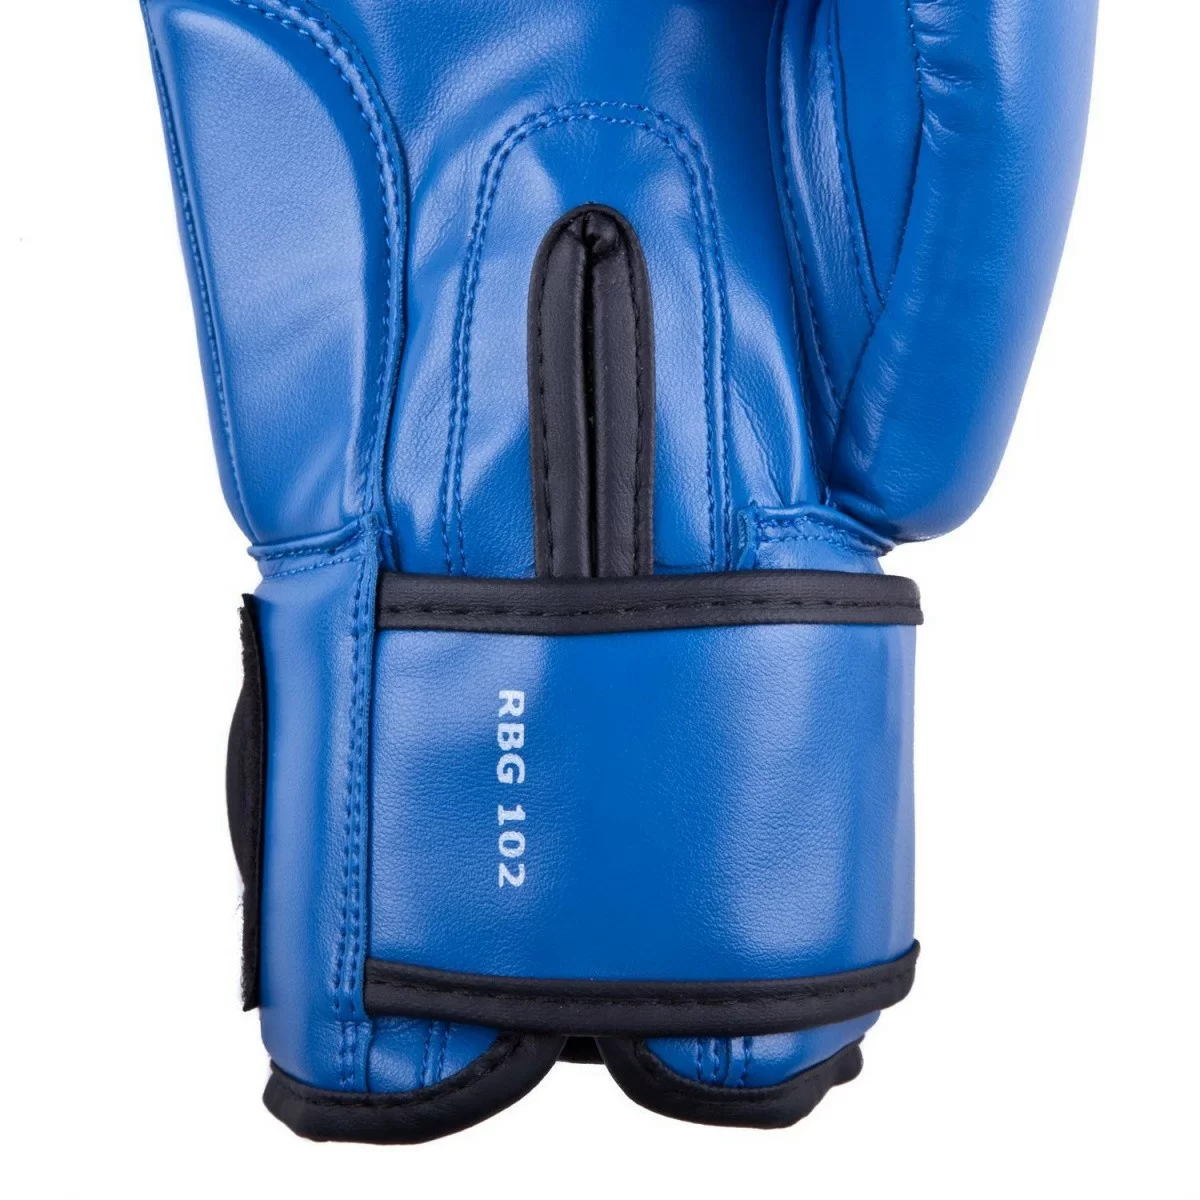 Реальное фото Перчатки боксерские Roomaif RBG-100 Кожа синий от магазина СпортЕВ